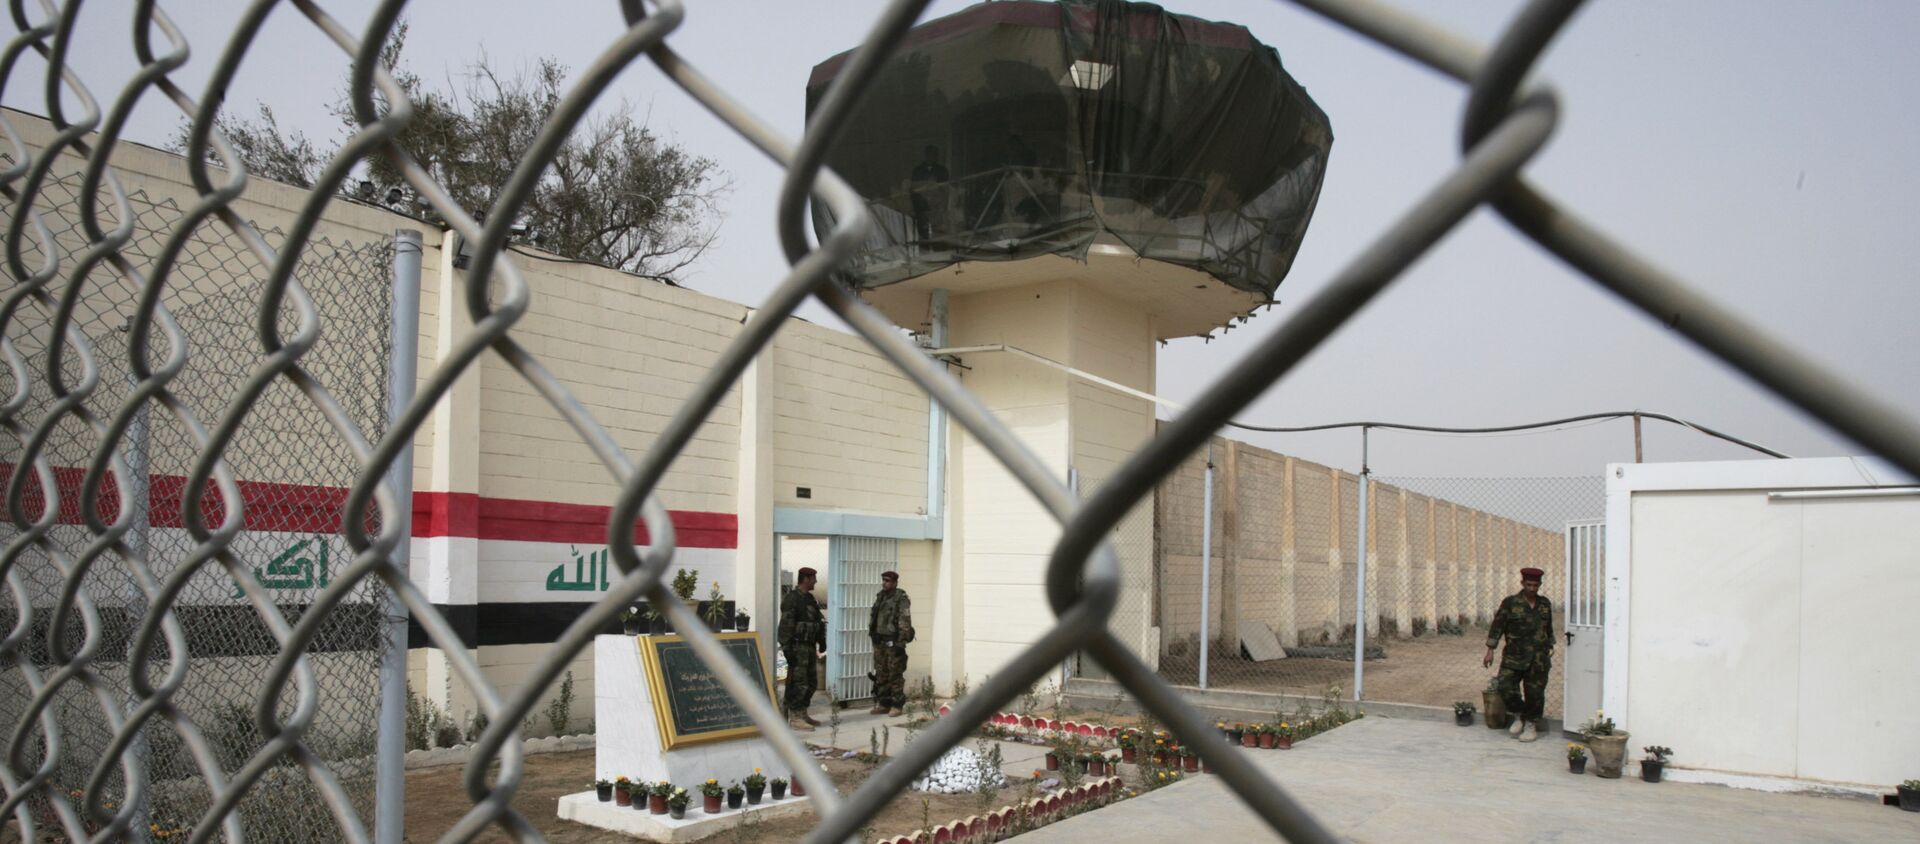 Guardias están parados en la entrada de la prisión de Abu Ghraib renovada, imagen de archivo - Sputnik Mundo, 1920, 21.03.2018